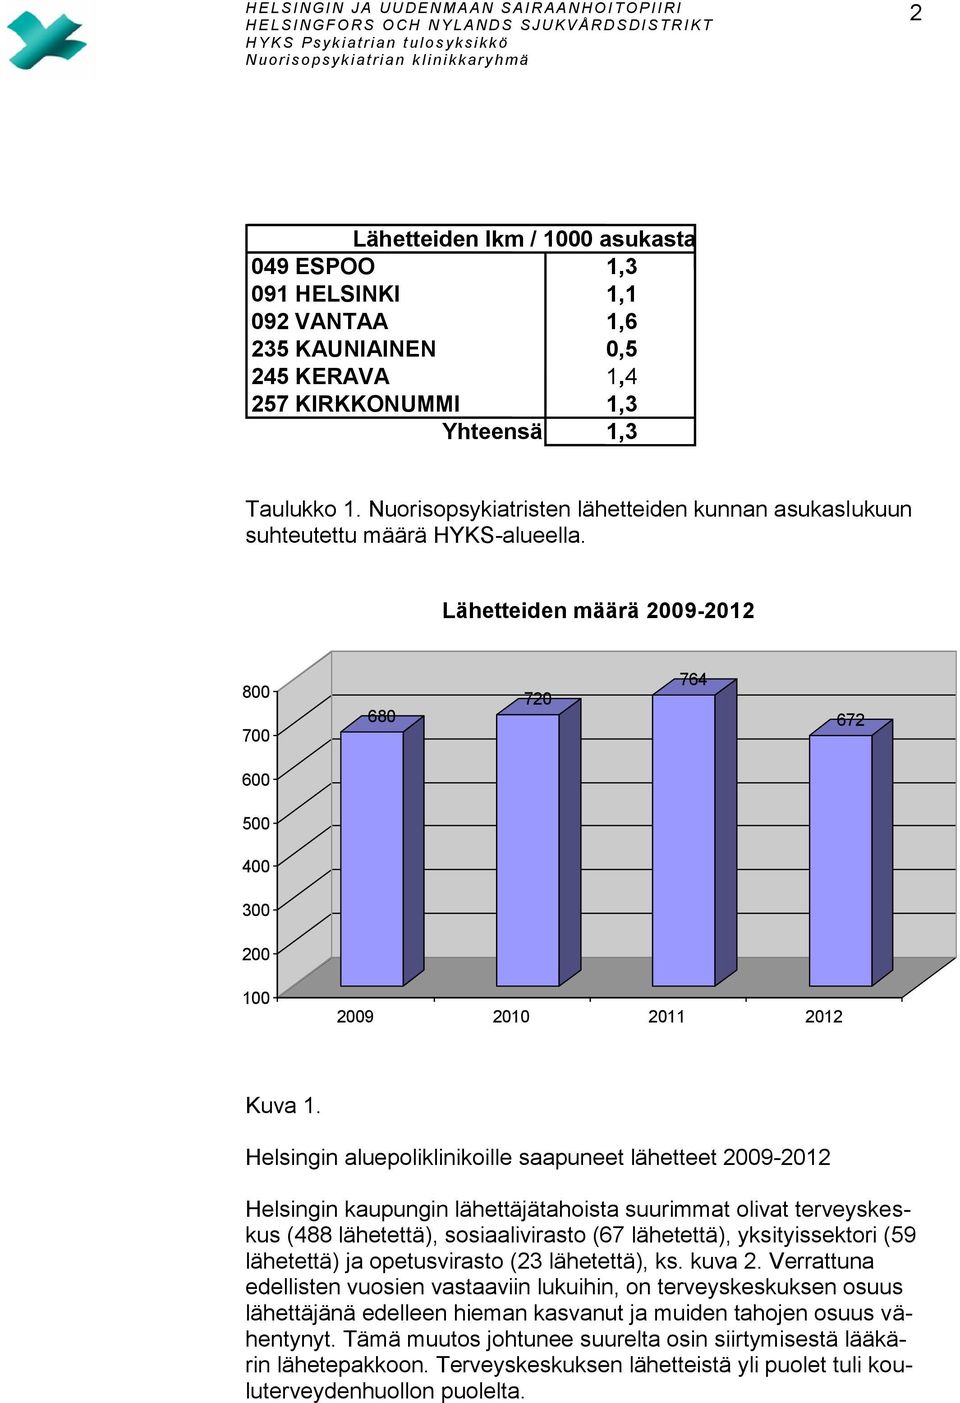 Helsingin aluepoliklinikoille saapuneet lähetteet 2009-2012 Helsingin kaupungin lähettäjätahoista suurimmat olivat terveyskeskus (488 lähetettä), sosiaalivirasto (67 lähetettä), yksityissektori (59